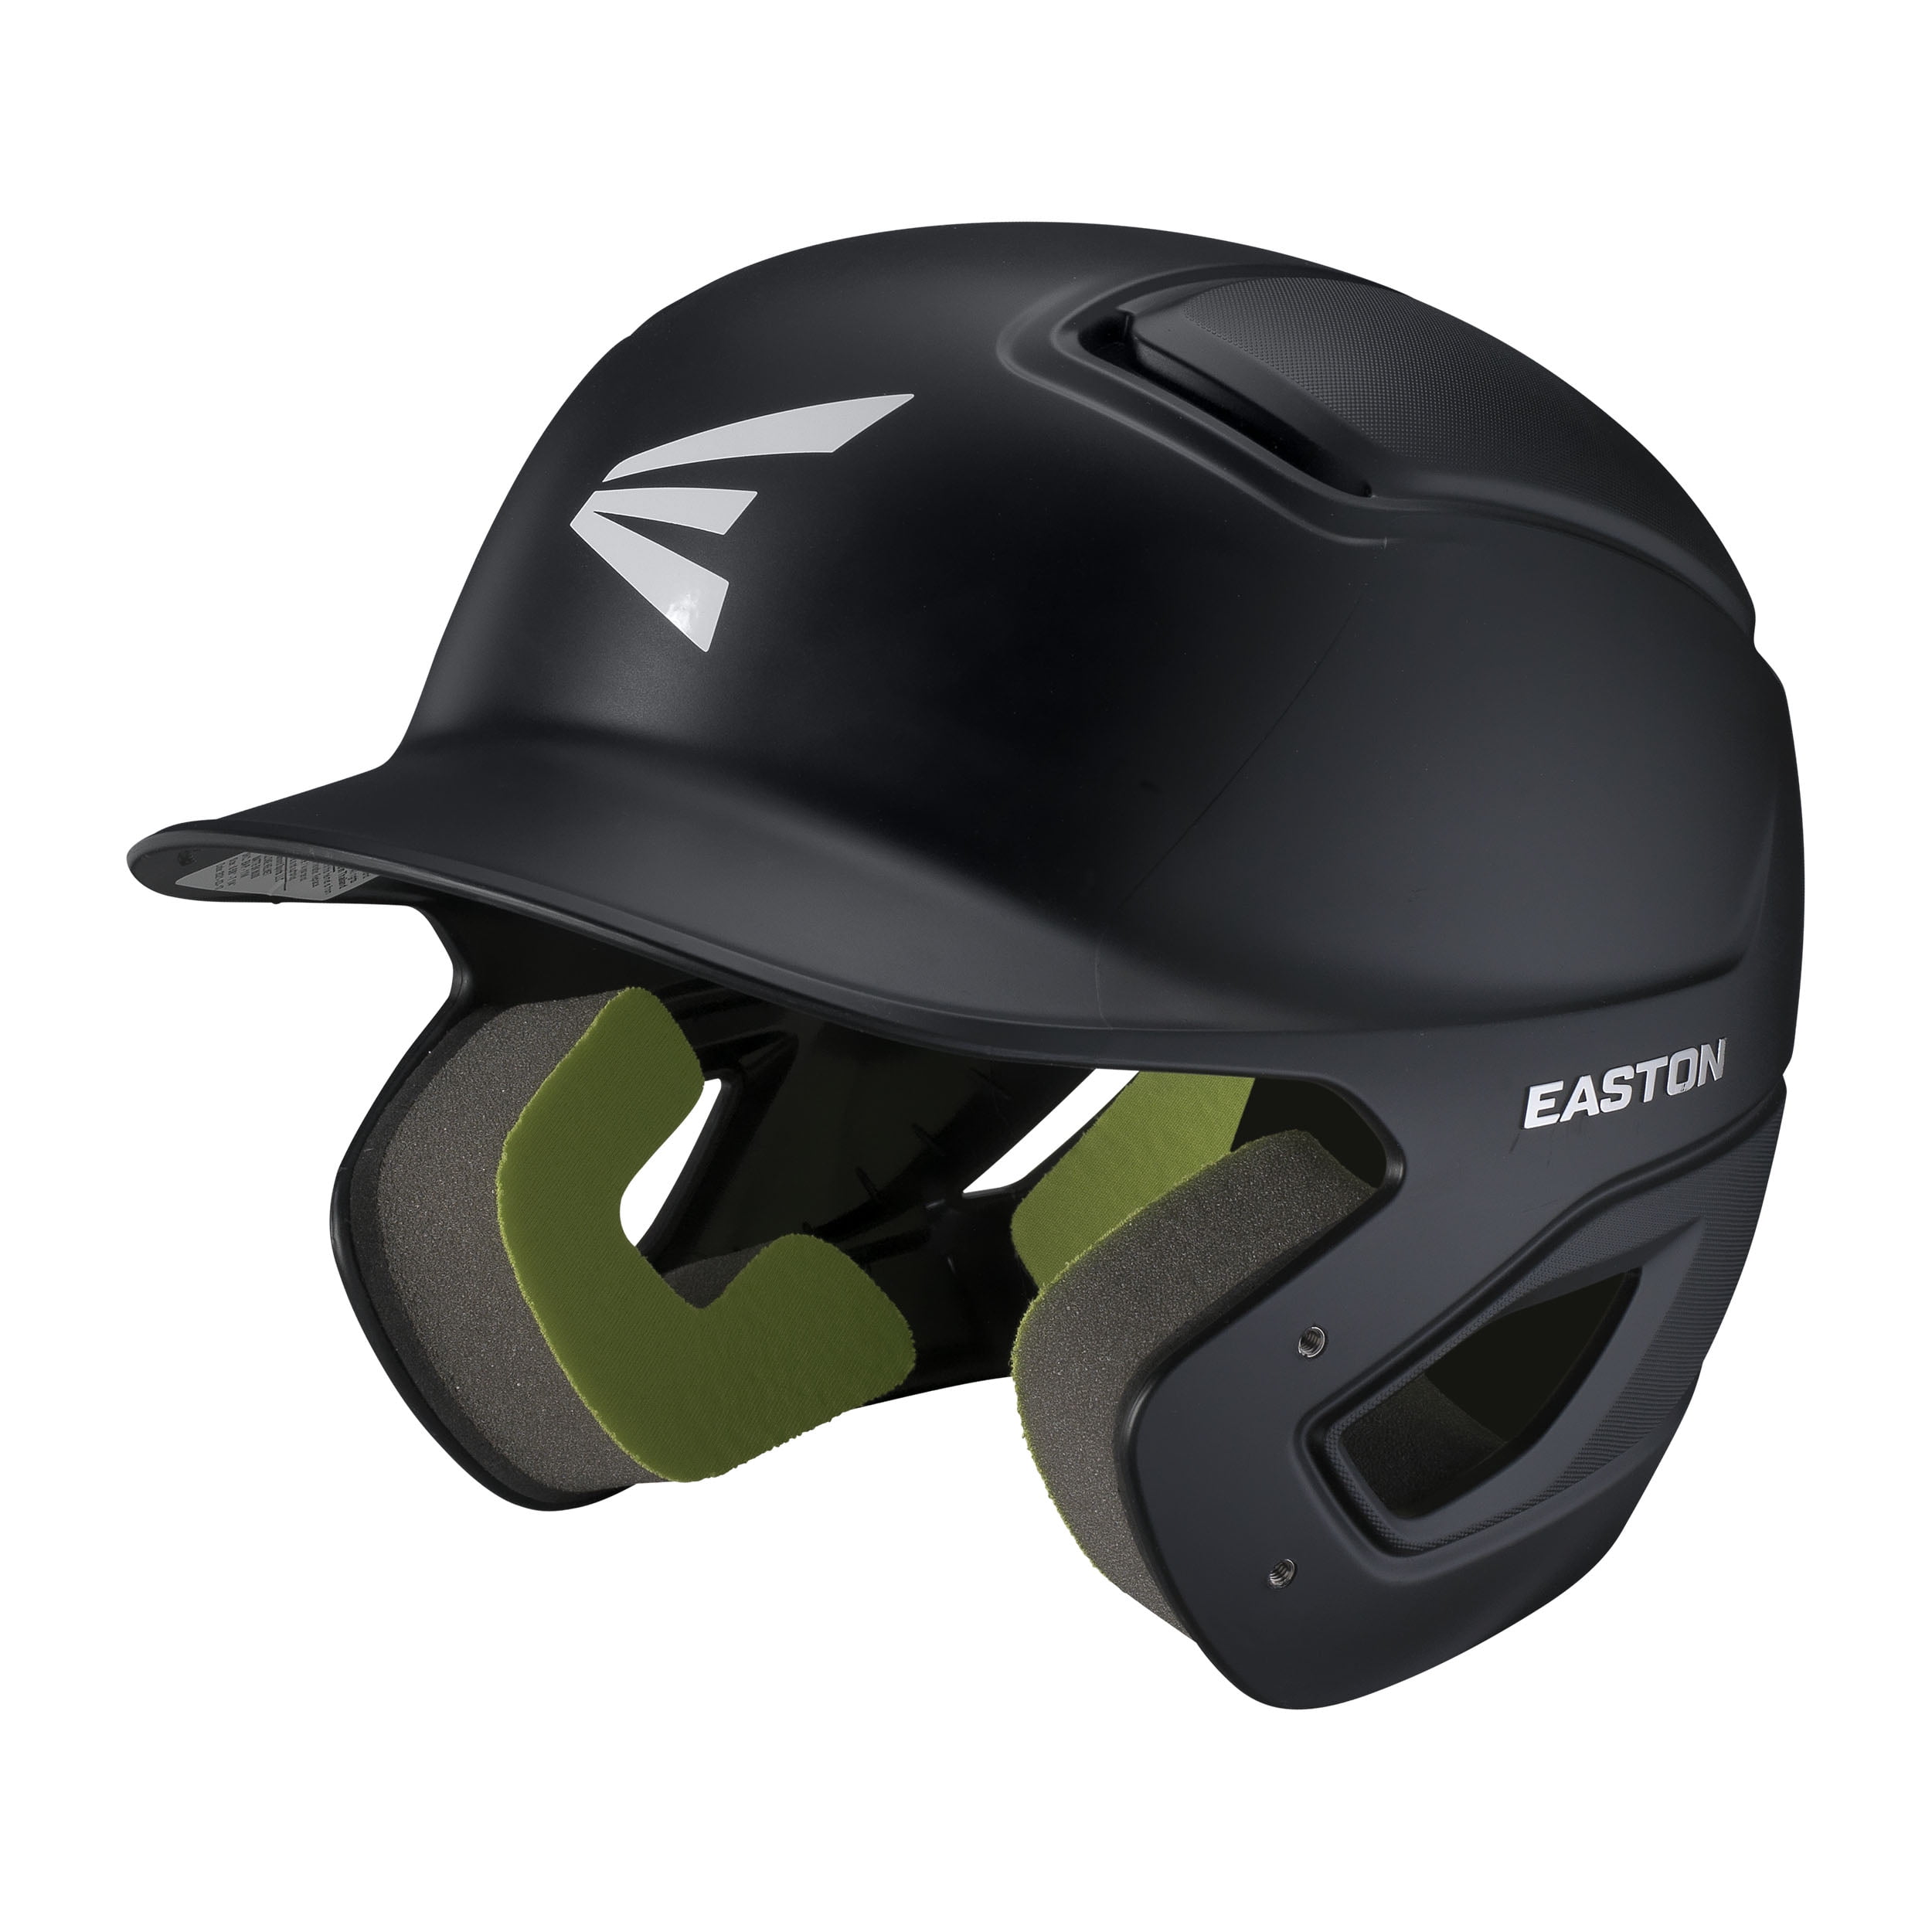 Easton Natural gloss black SR baseball helmet 6-7/8  7-5/8 